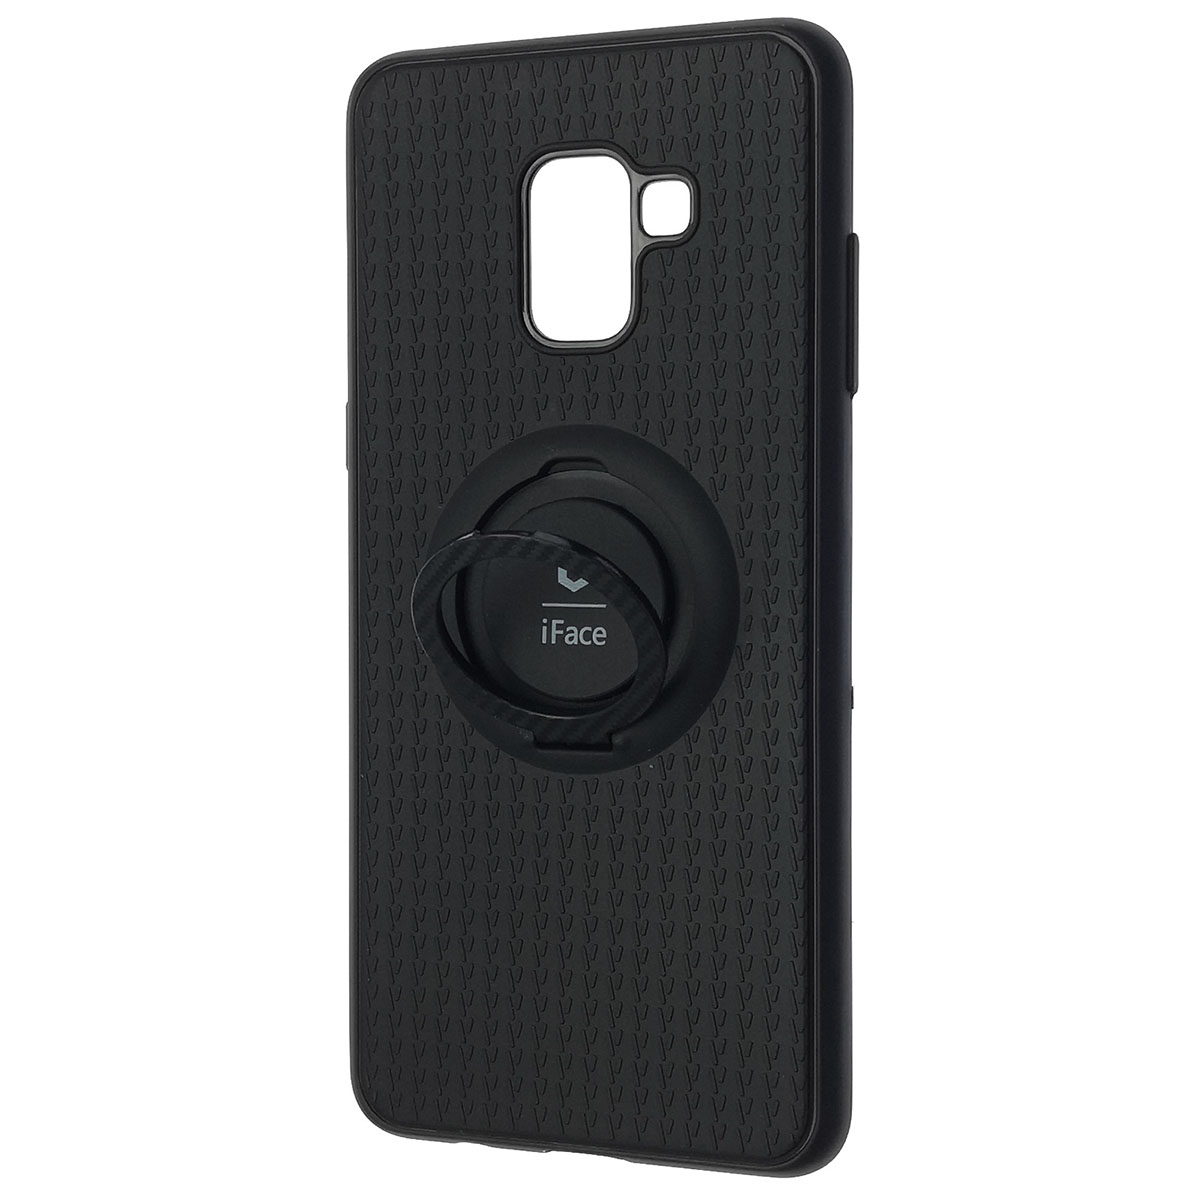 Чехол накладка iFace для SAMSUNG Galaxy A8 Plus (SM-A730), силикон, кольцо держатель, цвет черный.